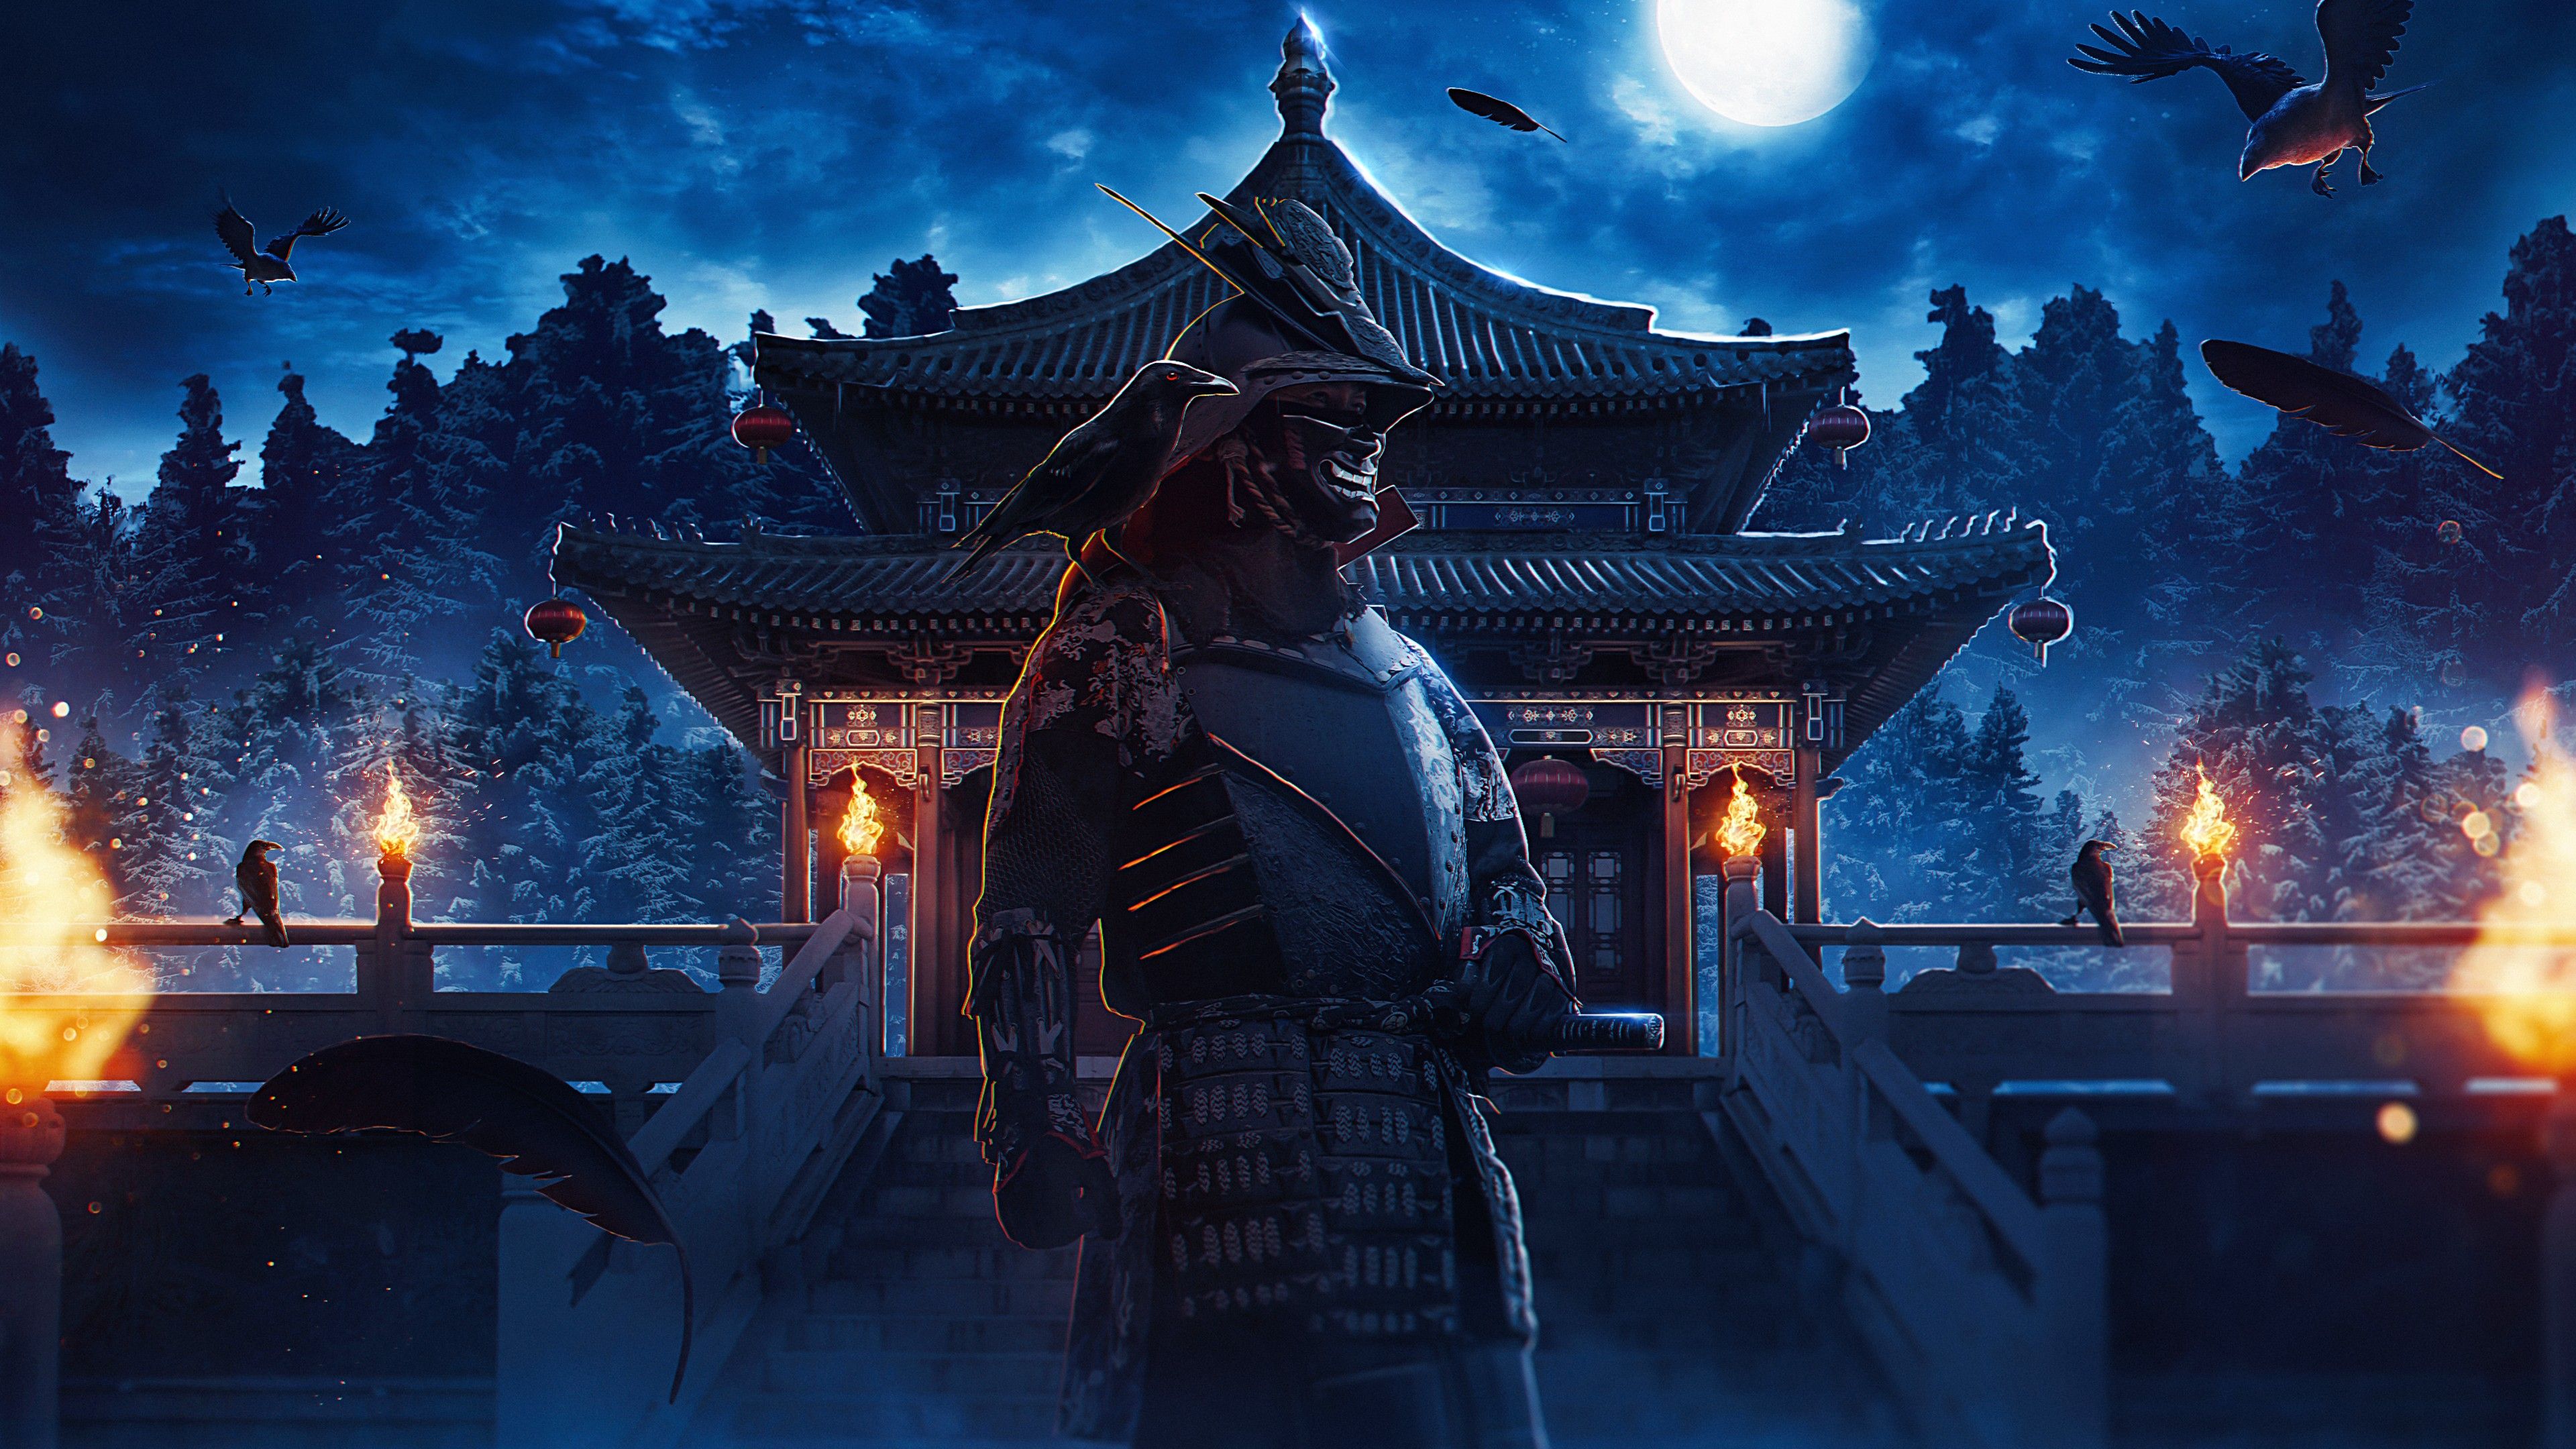 Các tín đồ của samurai của bạn sẽ không thể bỏ qua bộ sưu tập hình nền PC Samurai 4K tuyệt đẹp của chúng tôi. Hình ảnh chân thực và độ phân giải 4K mang đến cho bạn cảm giác như thực sự đang sống trong thế giới Samurai!